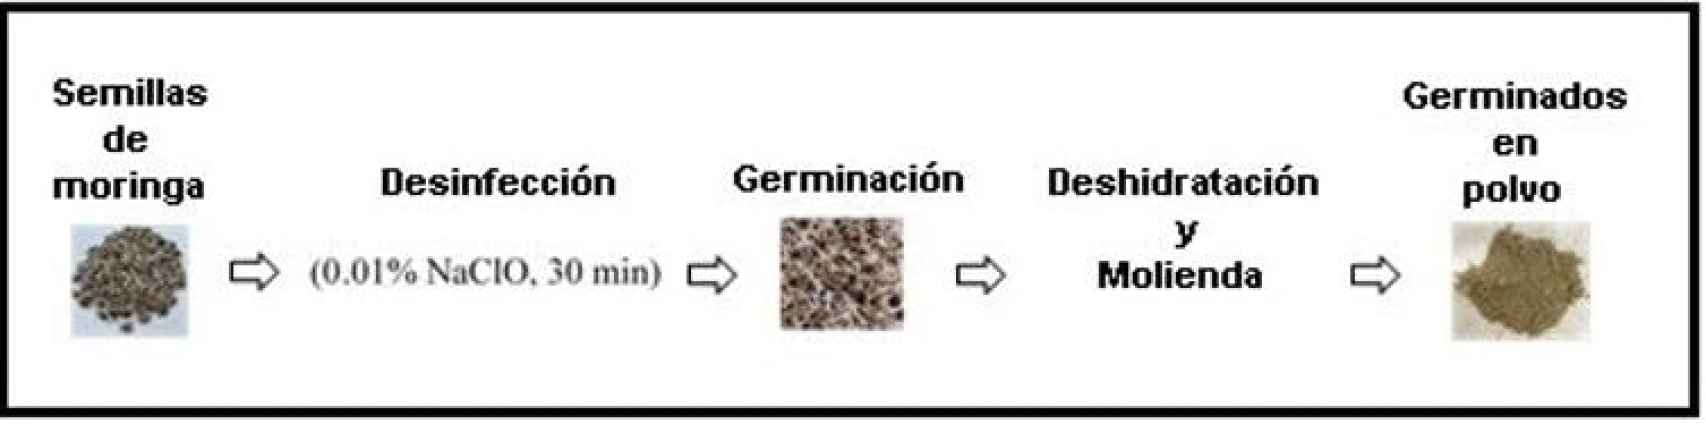 Figura 1. Proceso de obtención de germinados de moringa en polvo.